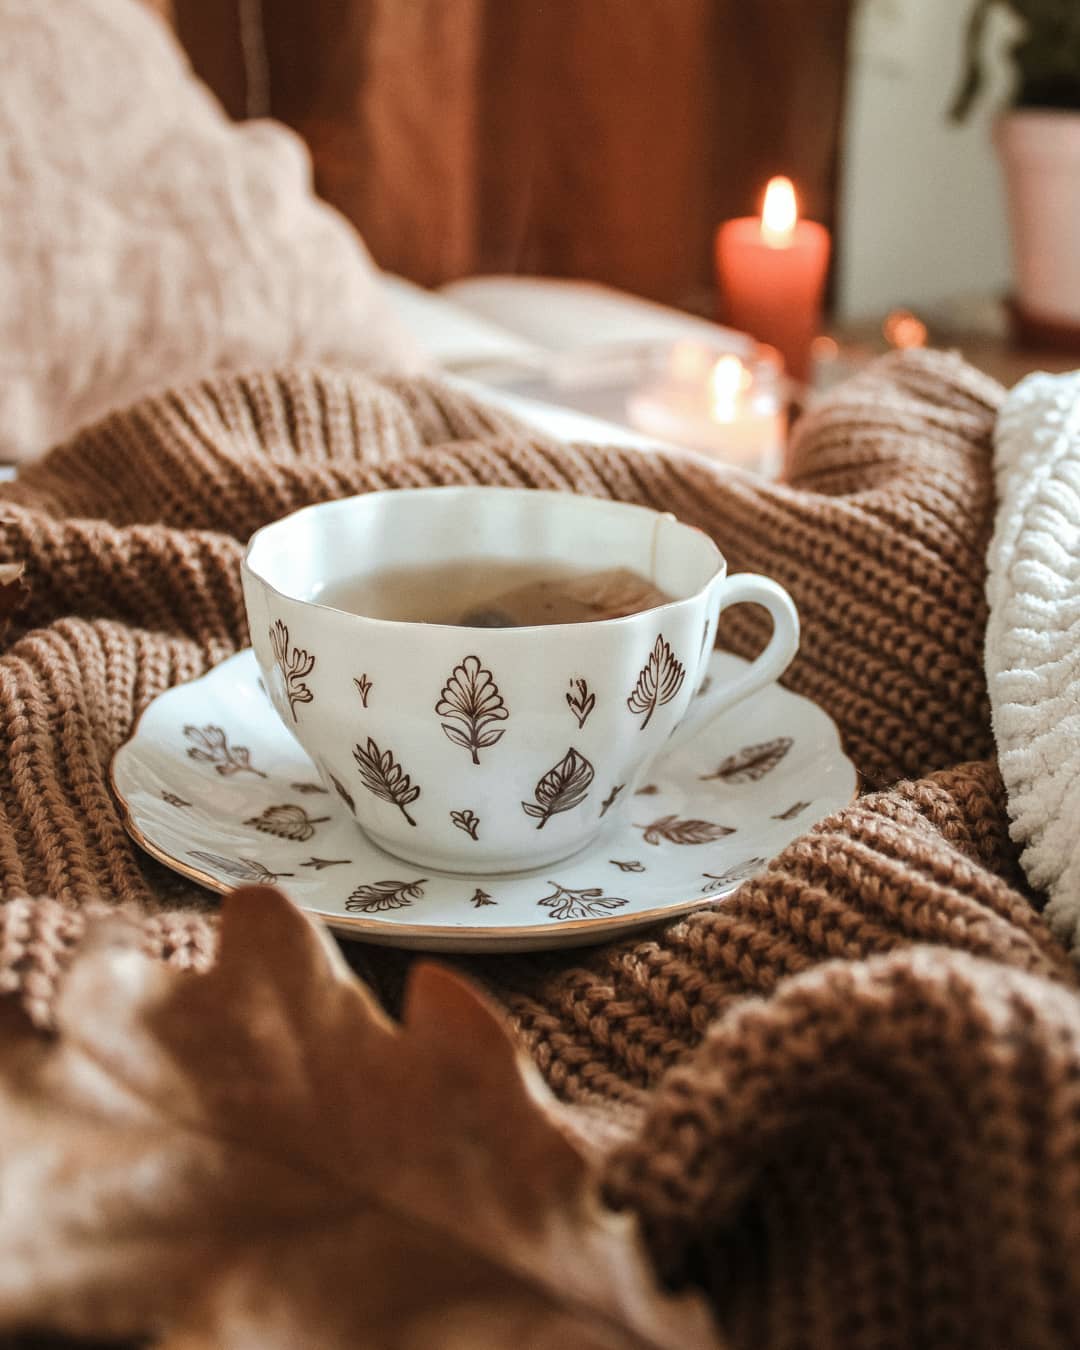 Фото Чашка кофе на вязаной вещи, горящая свеча и осенний листок, by annasofiaparkby